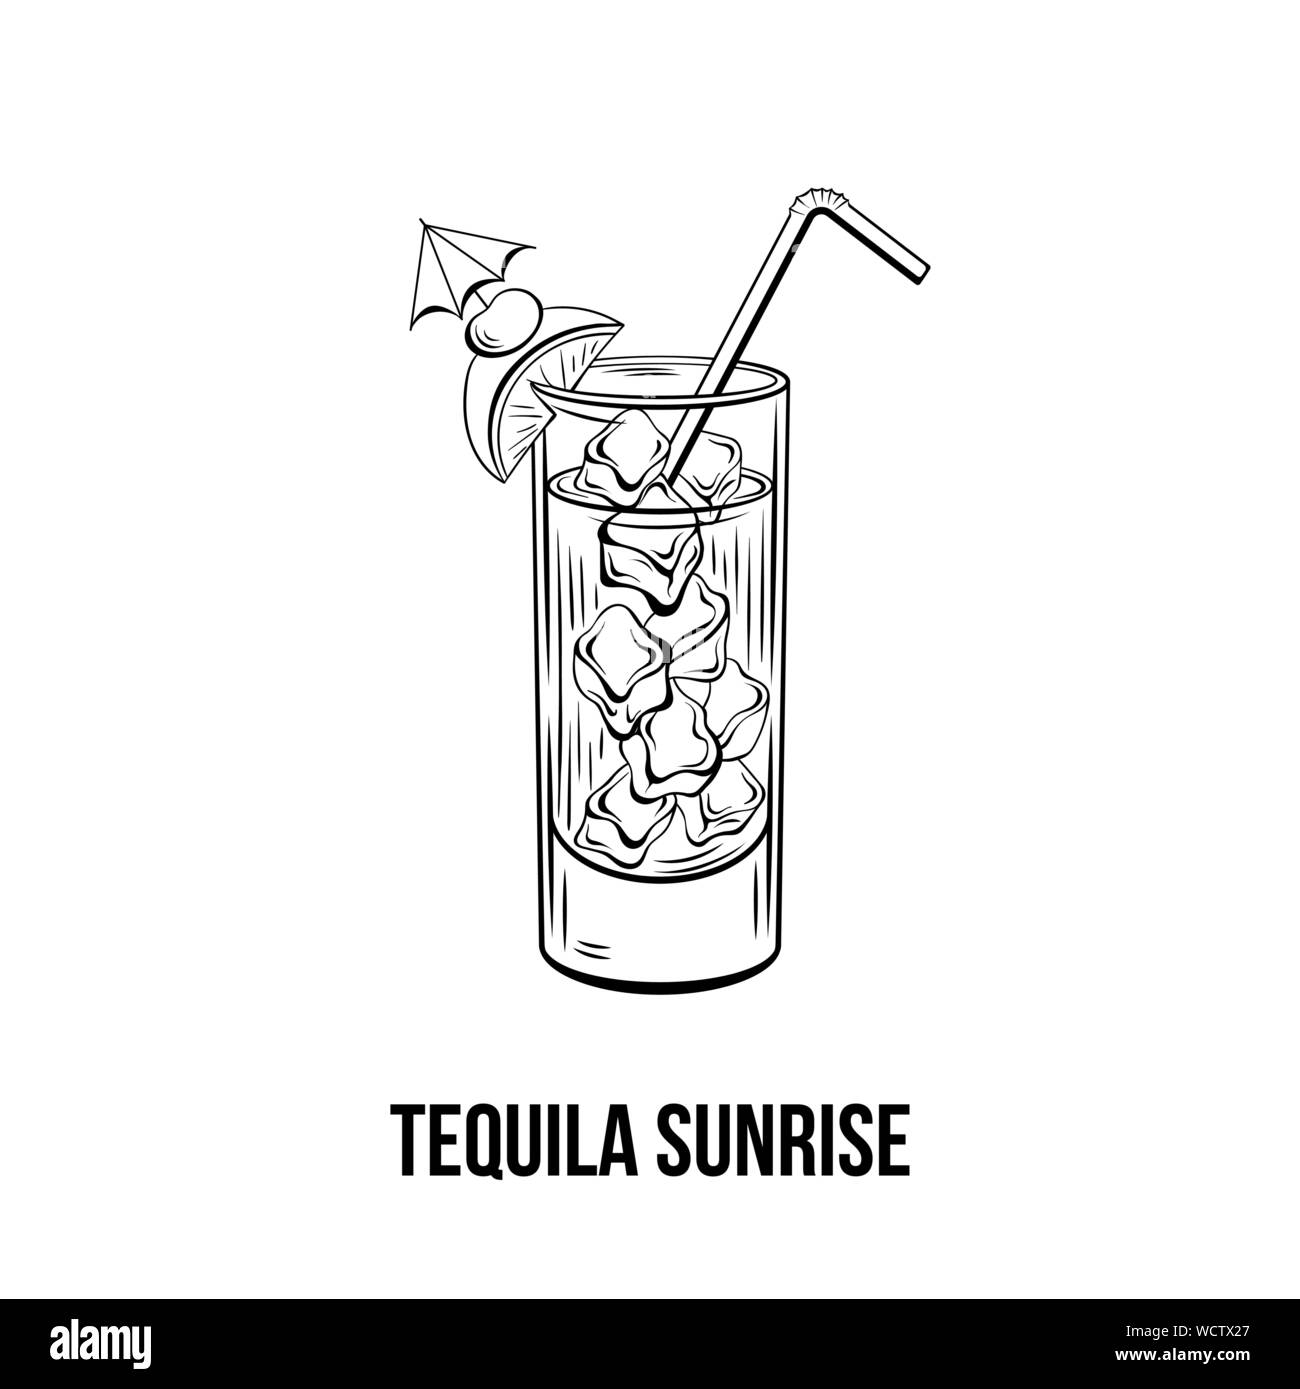 Tequila Sunrise schwarz-weiß illustration. Saftige Cocktail mit Eis, Cherry und Orange Slice auf Glas Tinte Zeichnung. Erfrischende Getränke, starkes Getränk. Menü im Restaurant, Poster design Element Stock Vektor